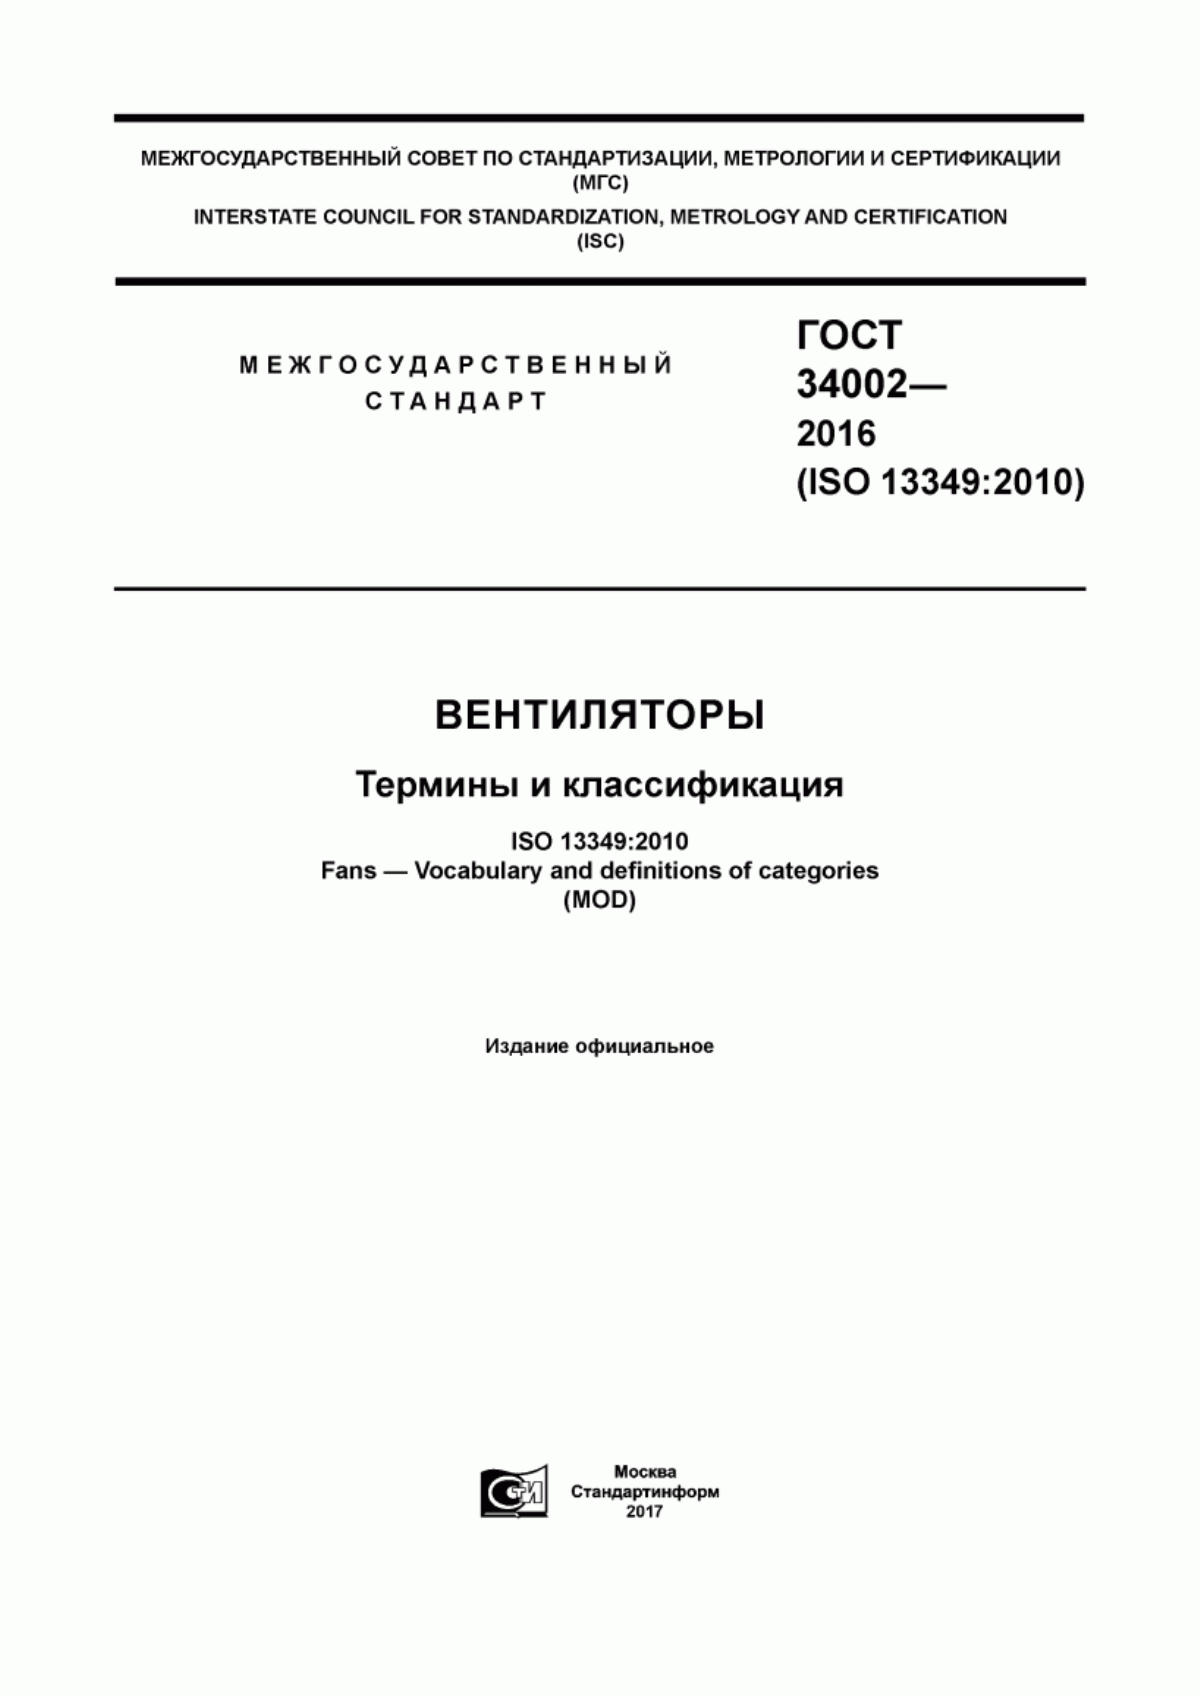 ГОСТ 34002-2016 Вентиляторы. Термины и классификация